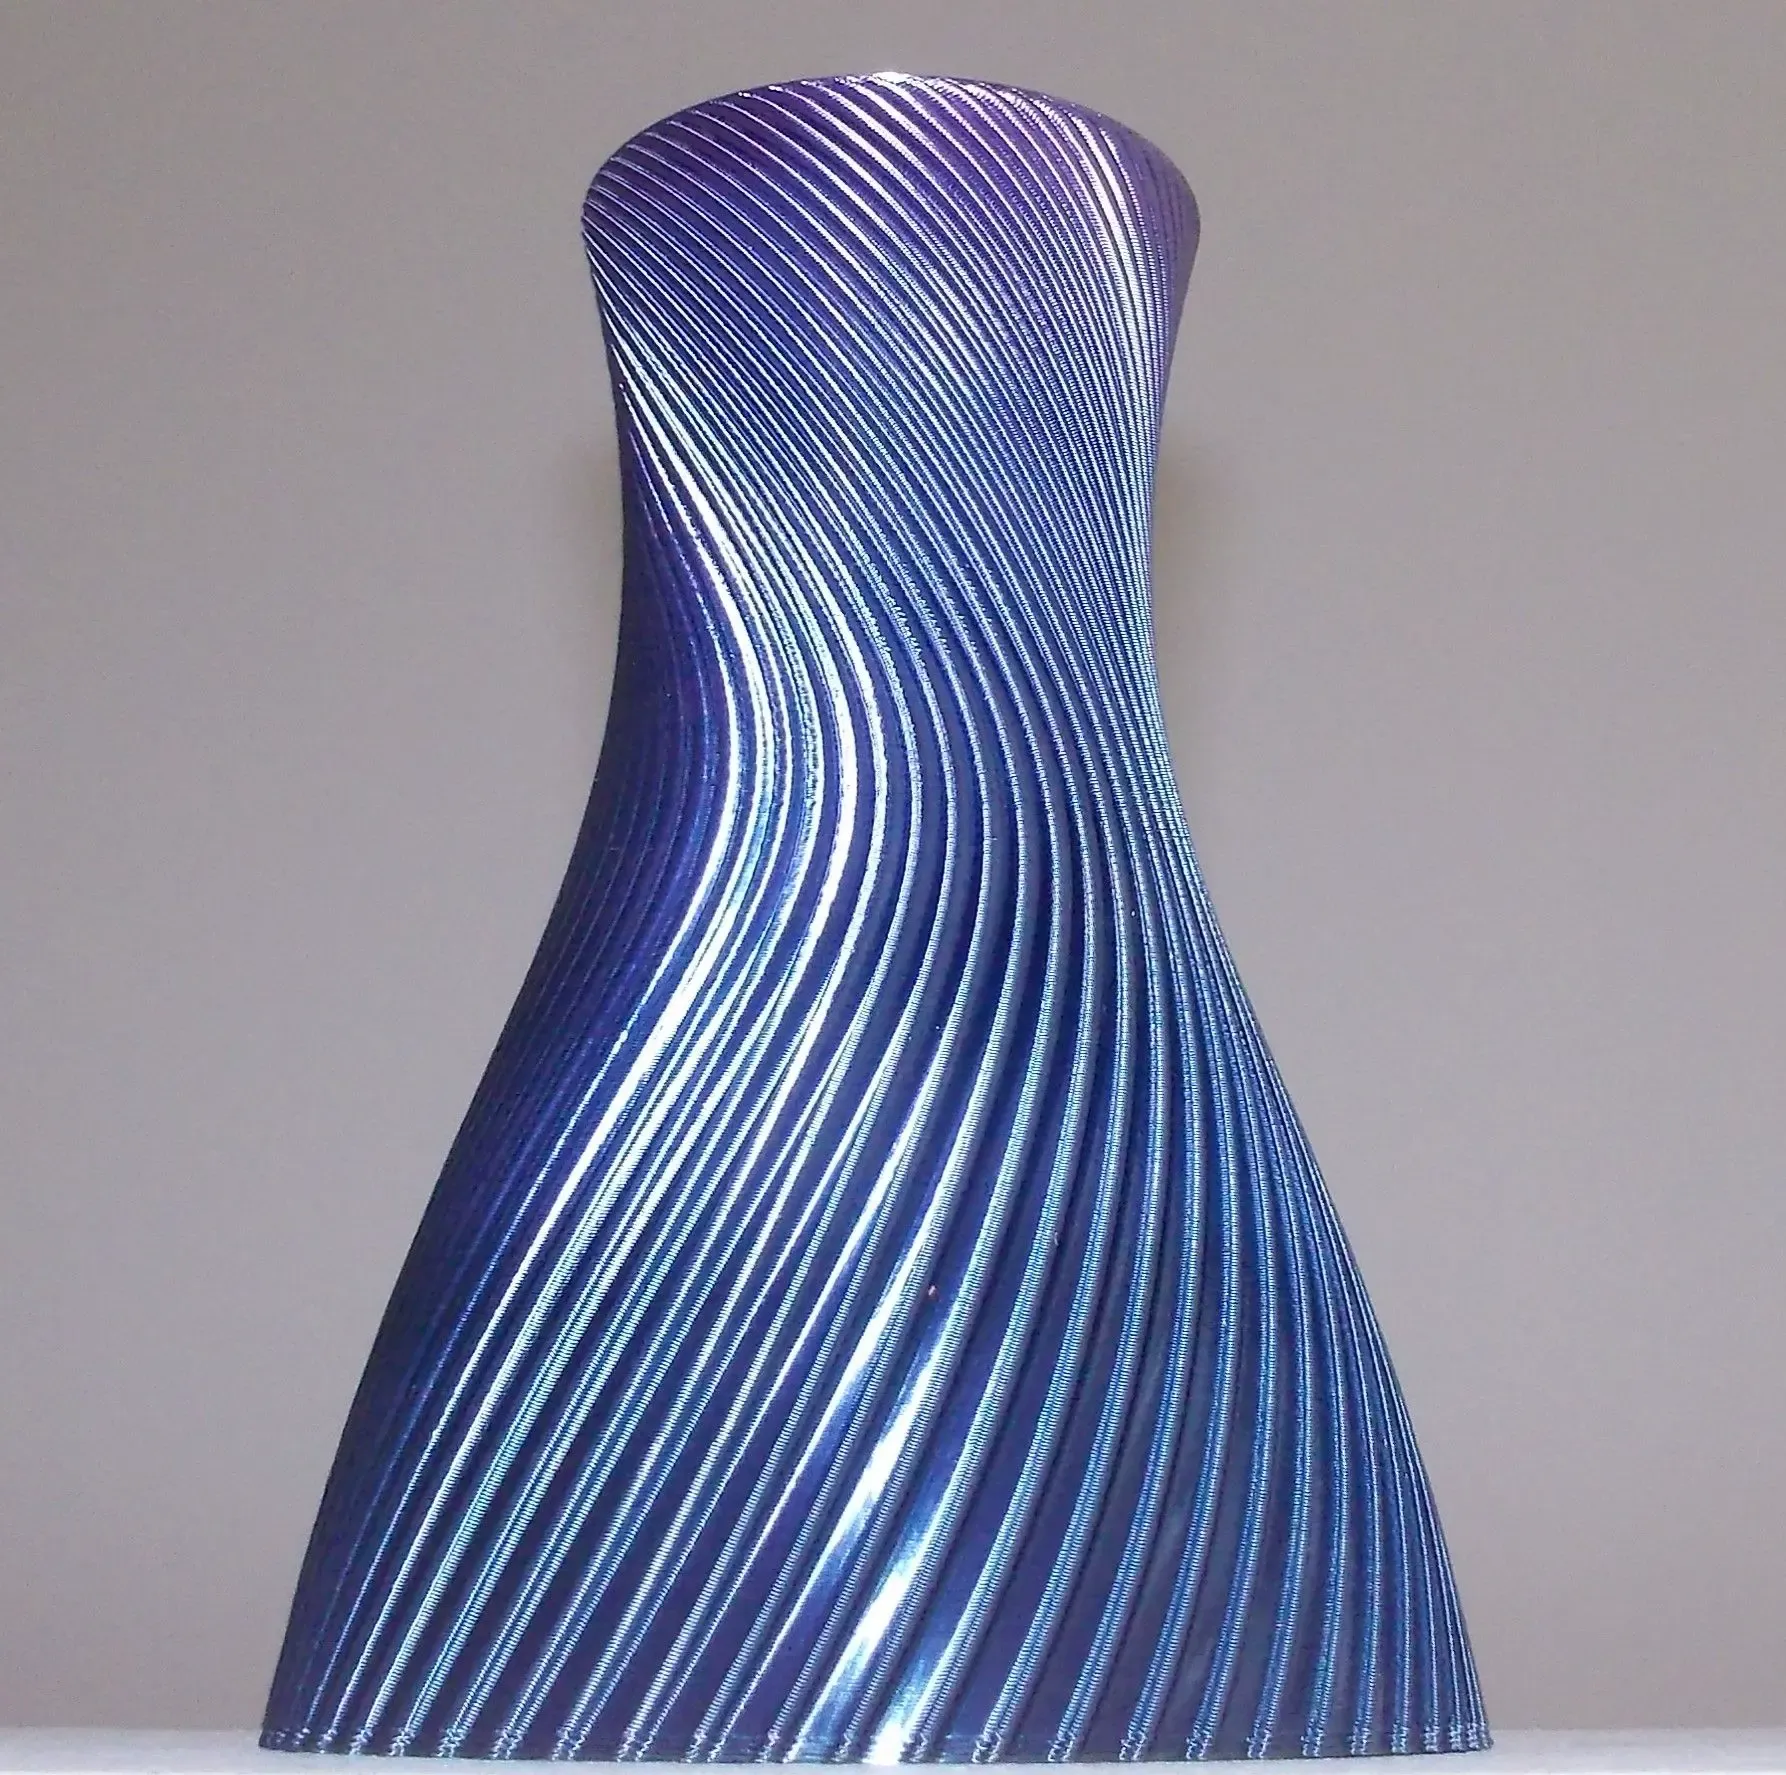 Vase #1 - Spiralised Vase